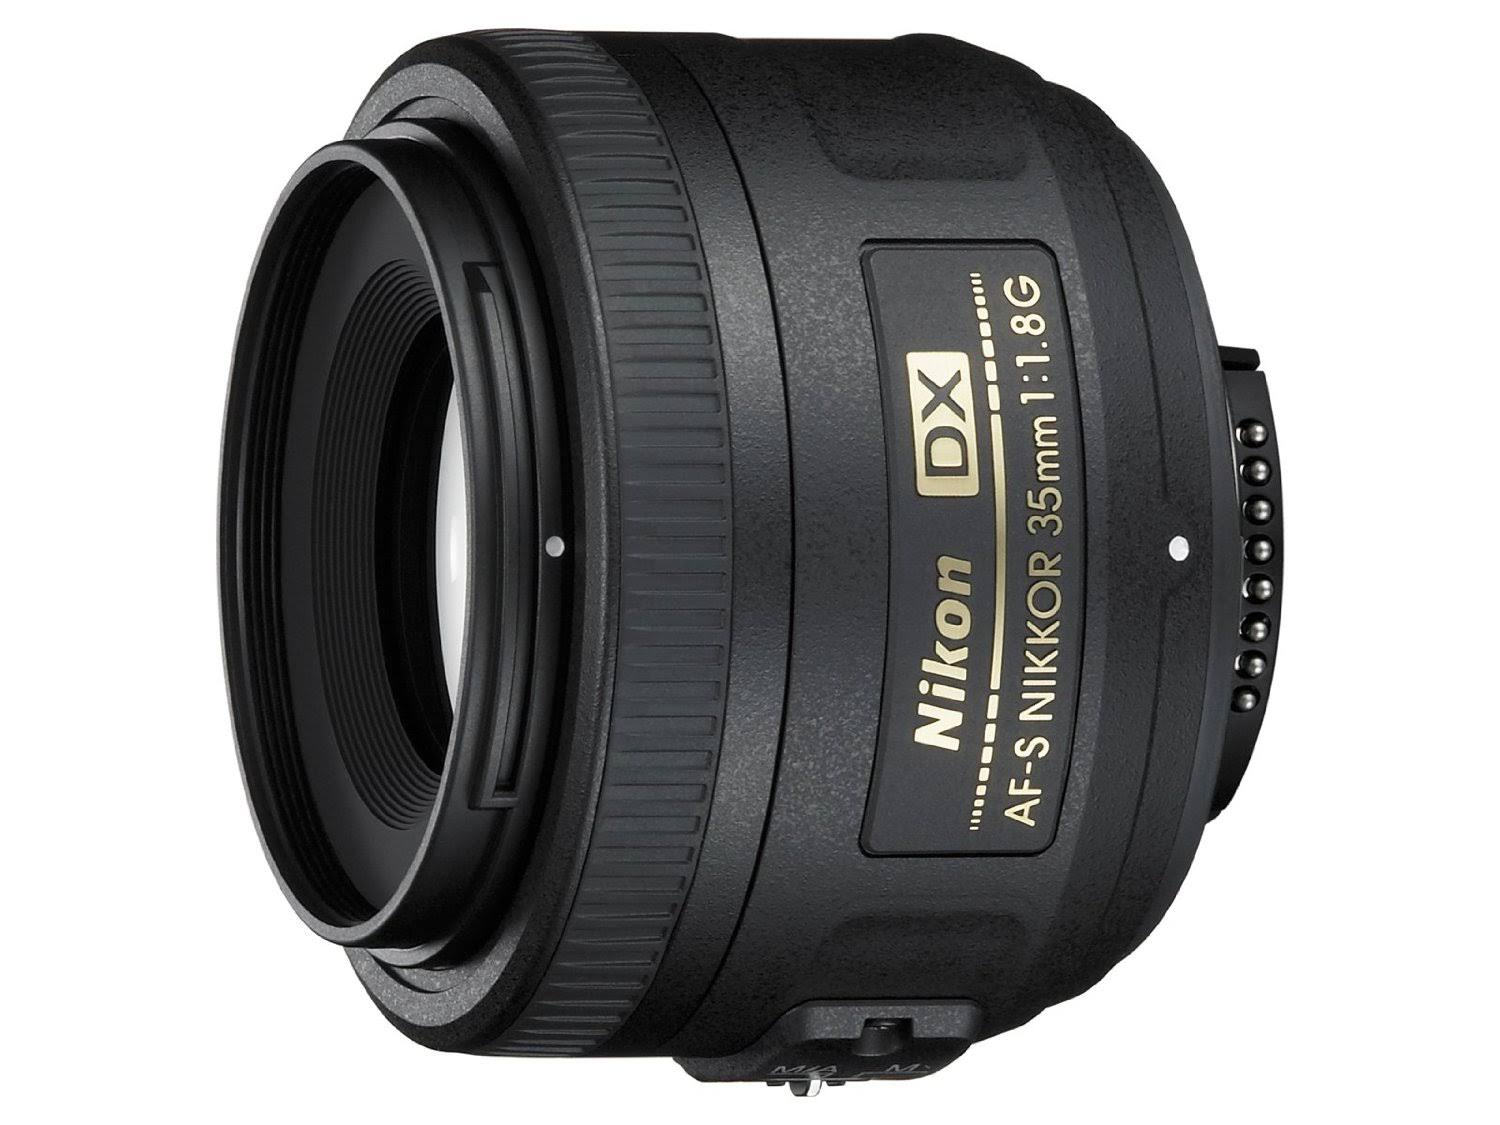 Nikon AF-S DX NIKKOR 35mm f/1.8G Lens with Auto Focus for DSLR Cameras